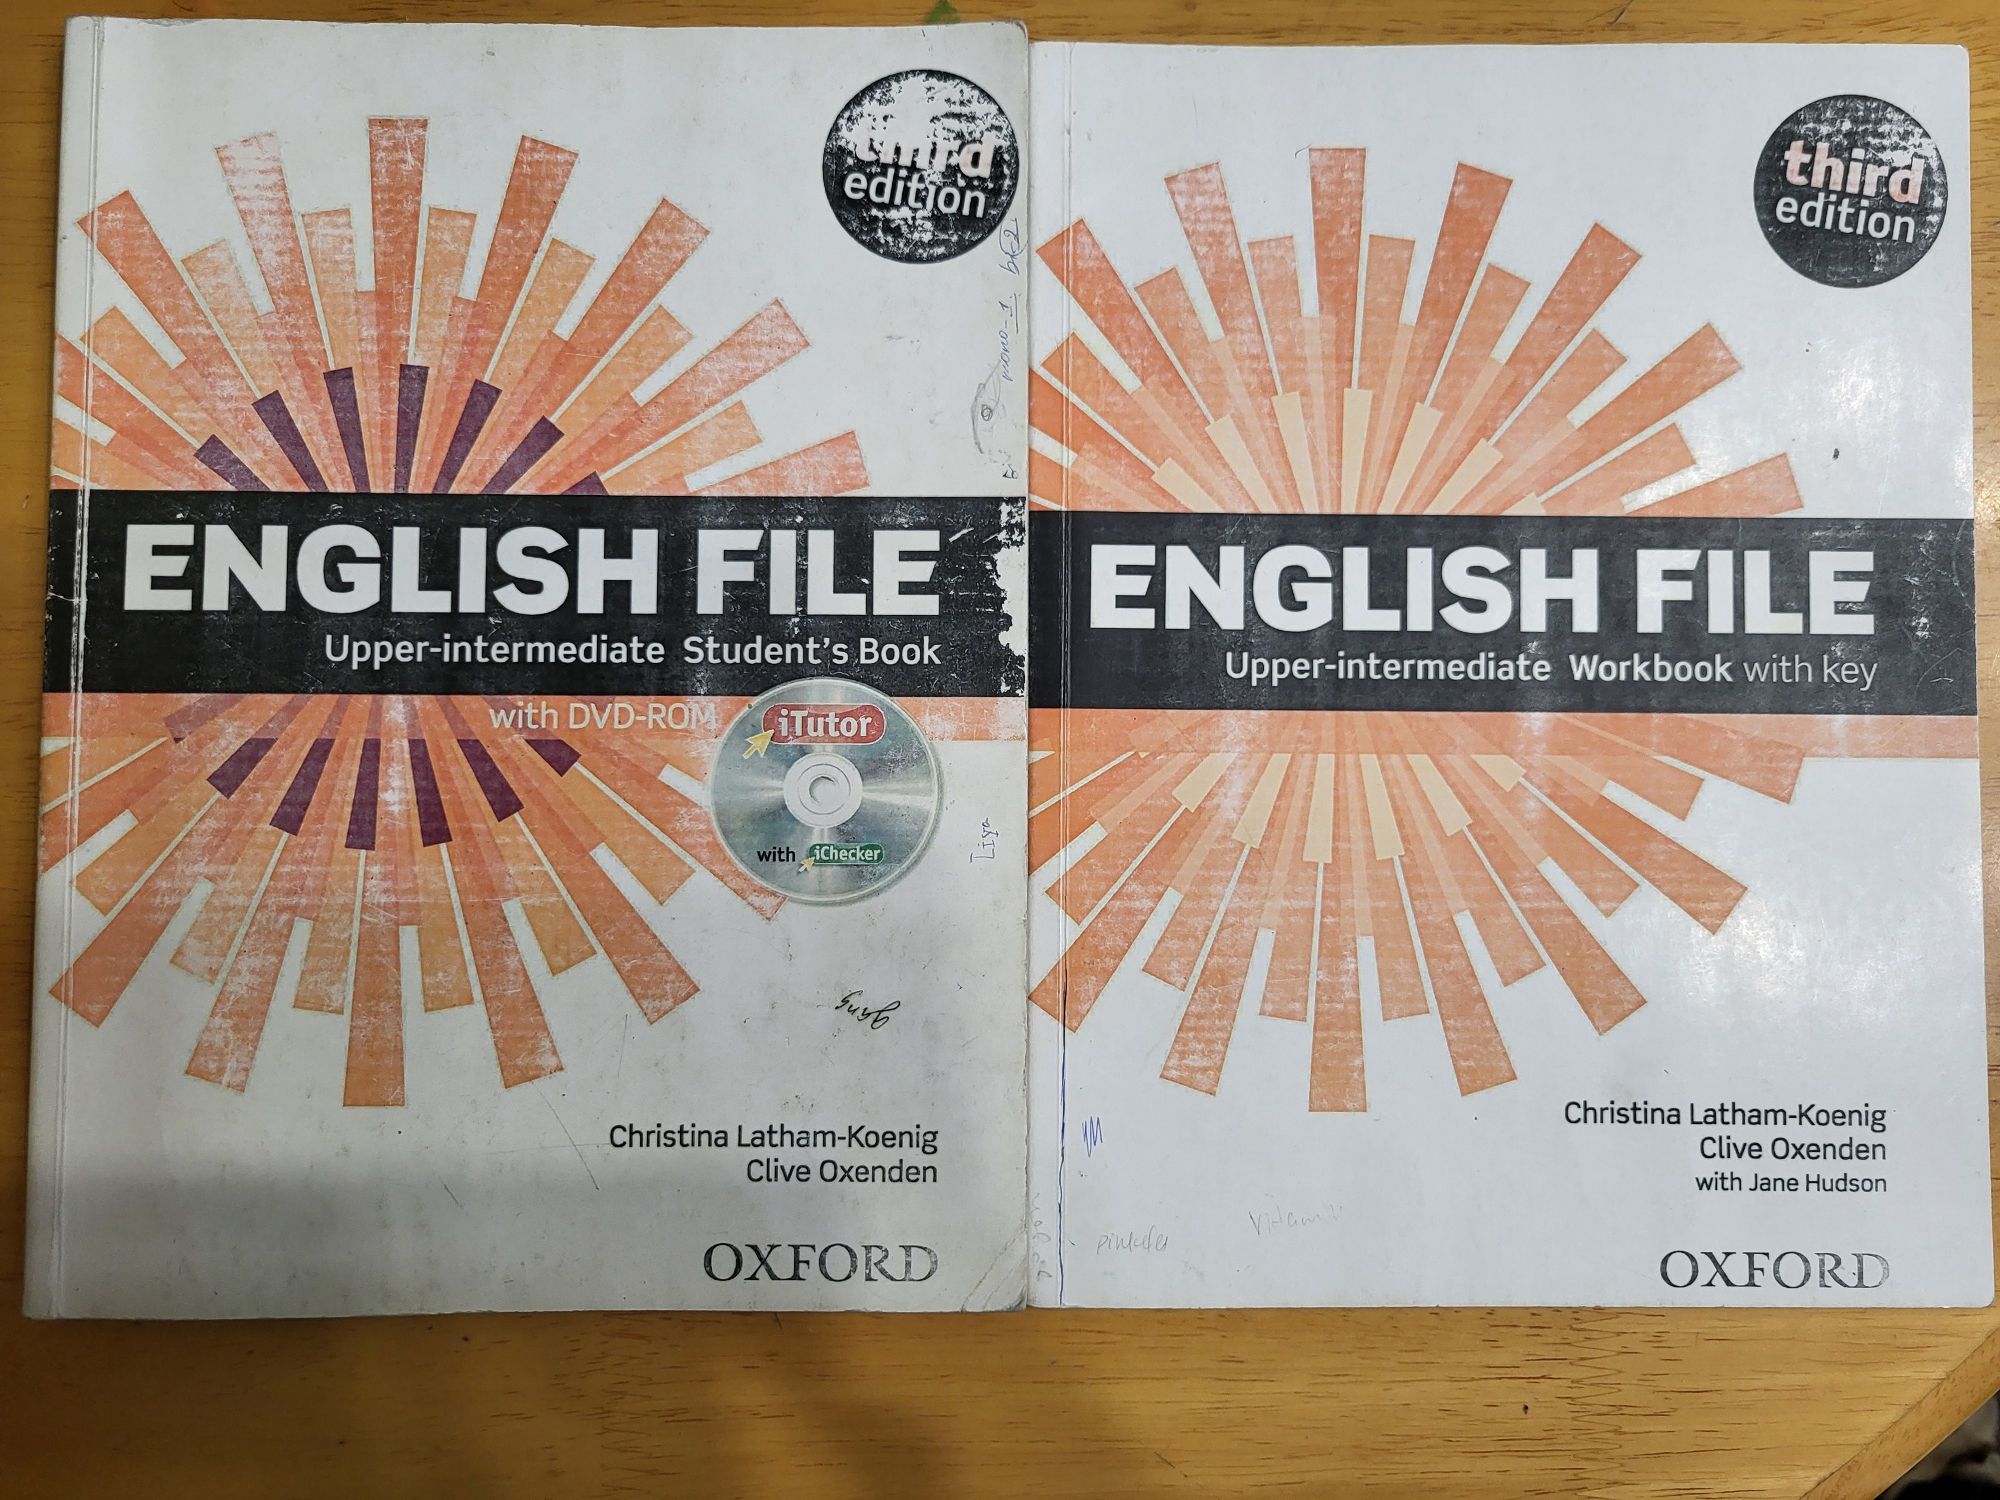 Учебники по английскому языку (Headway, English file, Project, Excel)